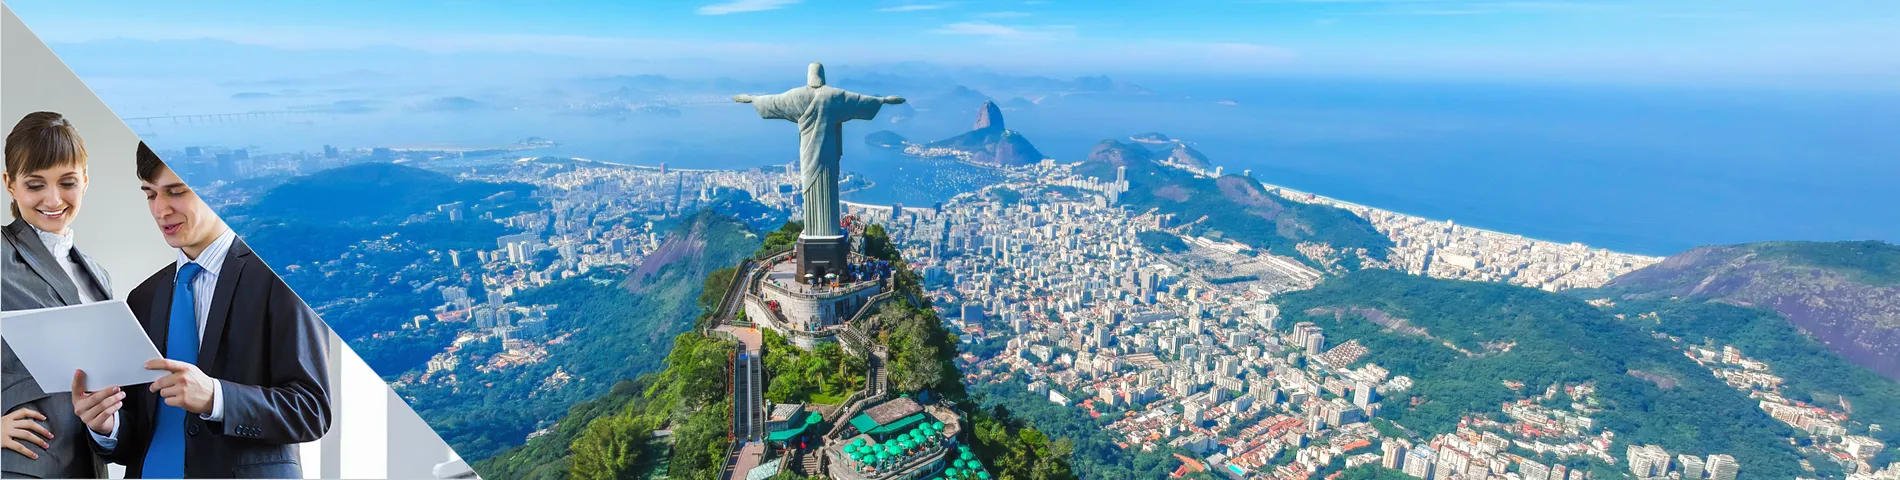 브라질 - 비즈니스 1:1 수업